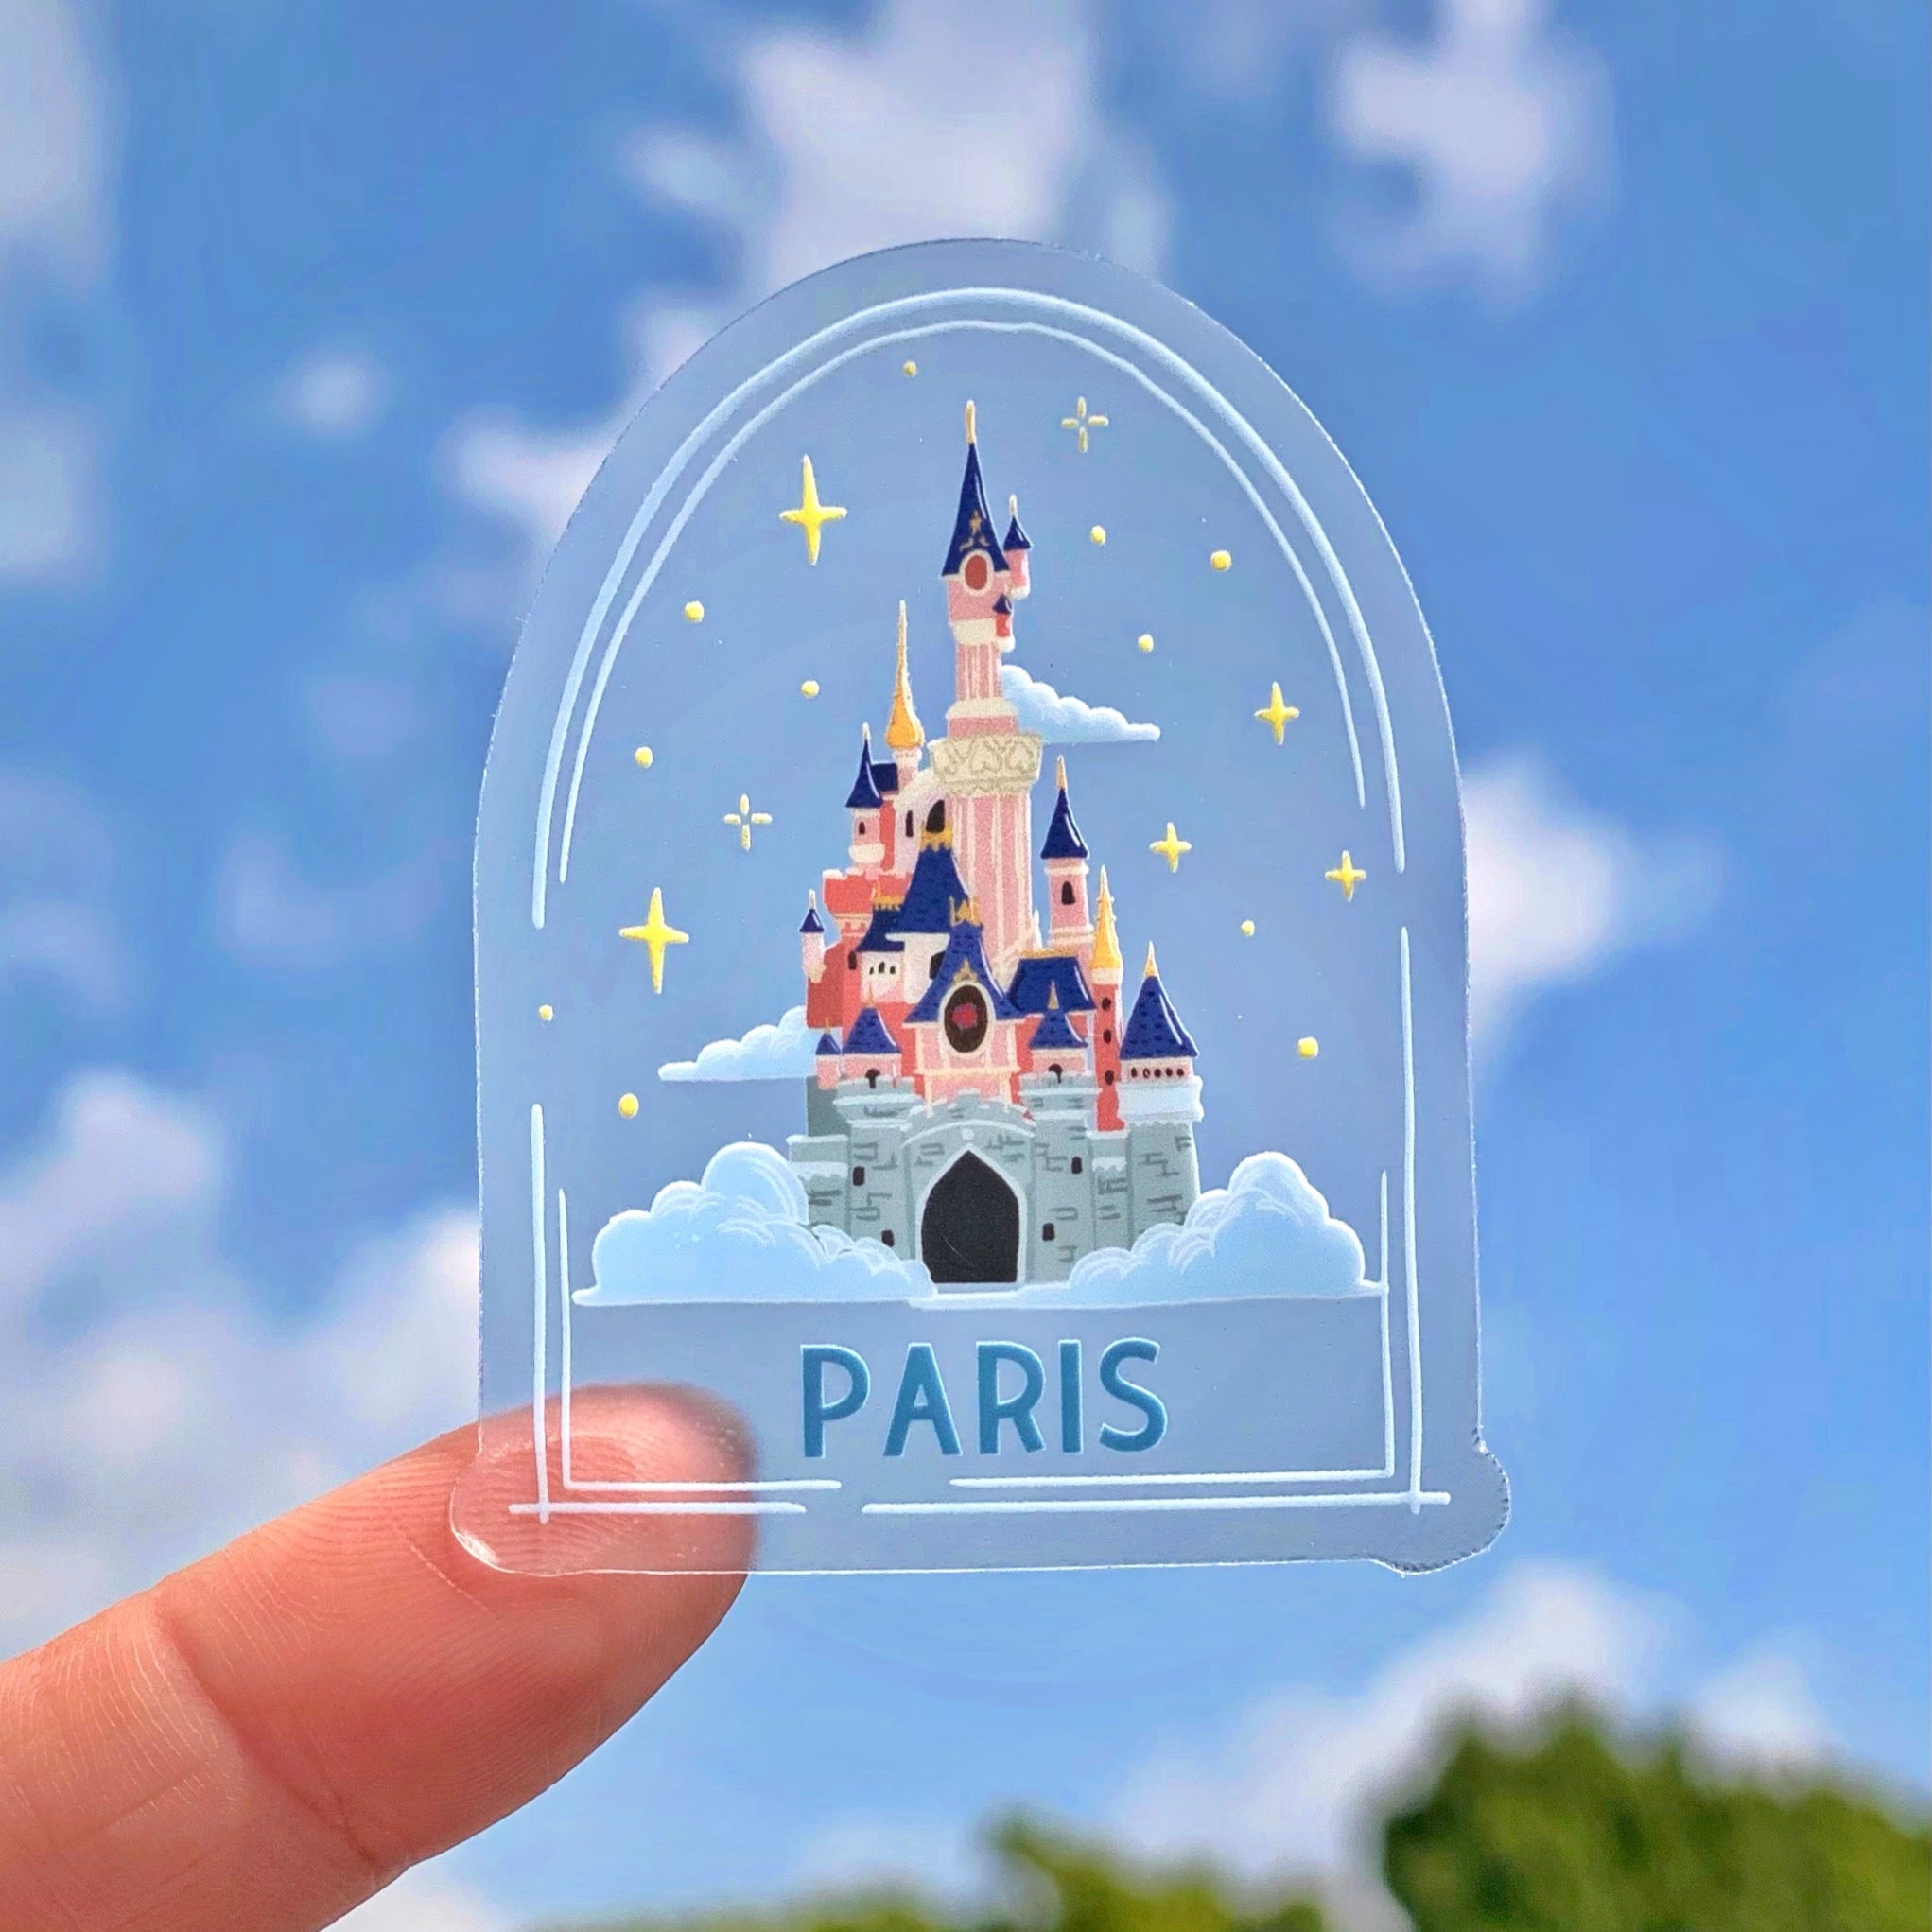 Disneyland Paris Castle Stickers for Sale